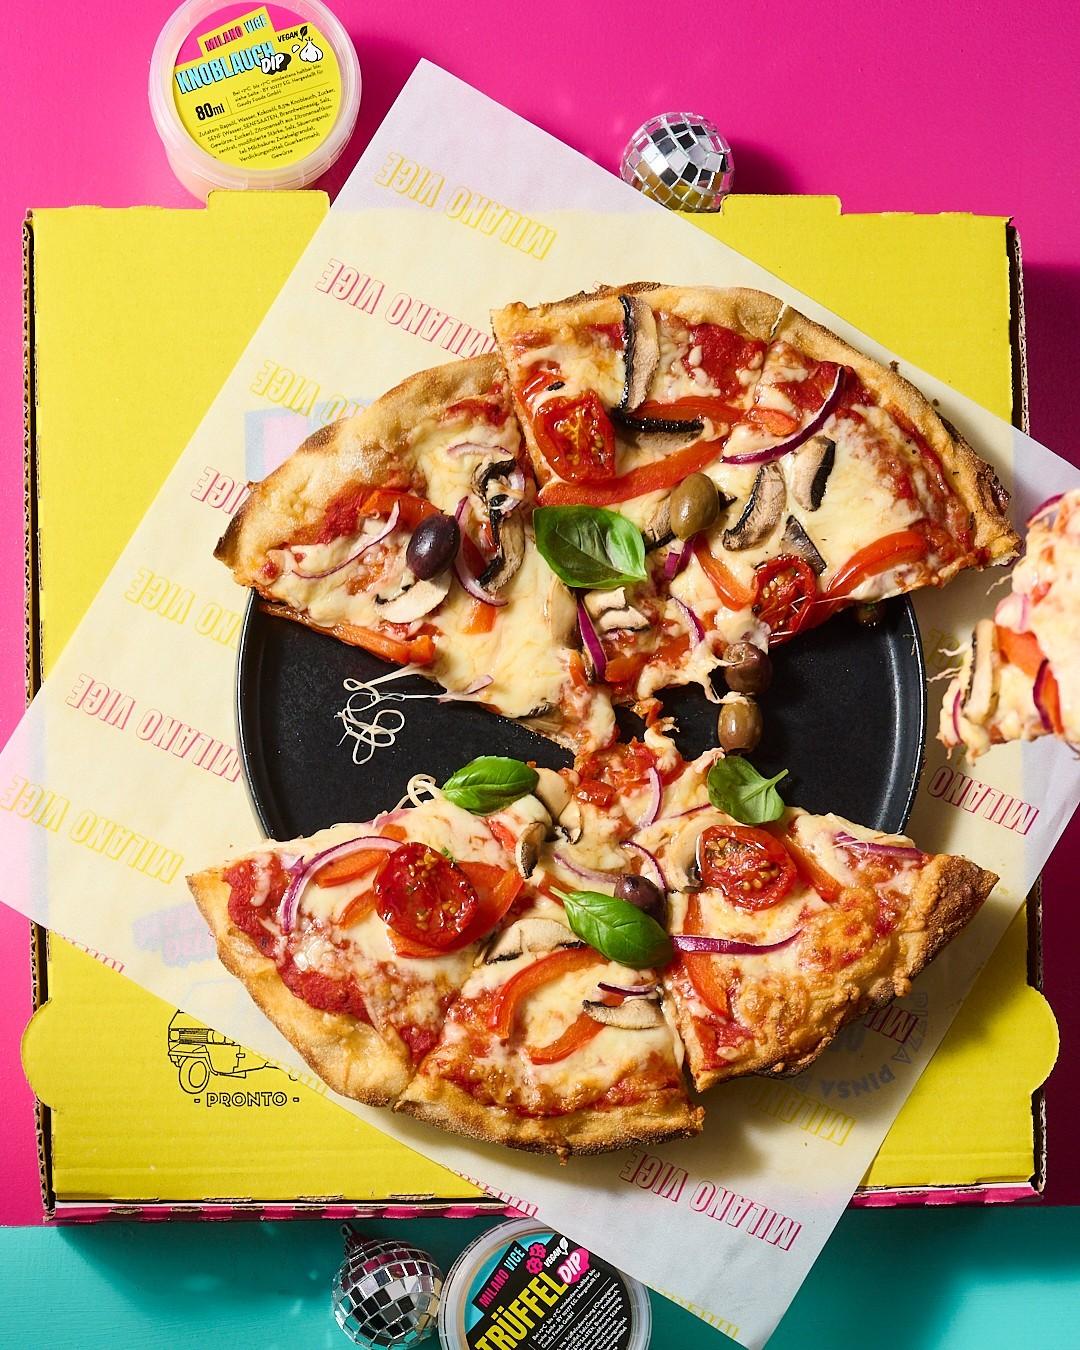 卖披萨的幽灵厨房，德国初创「Milano Vice」获830万欧元A轮融资-艾格农业投融资平台